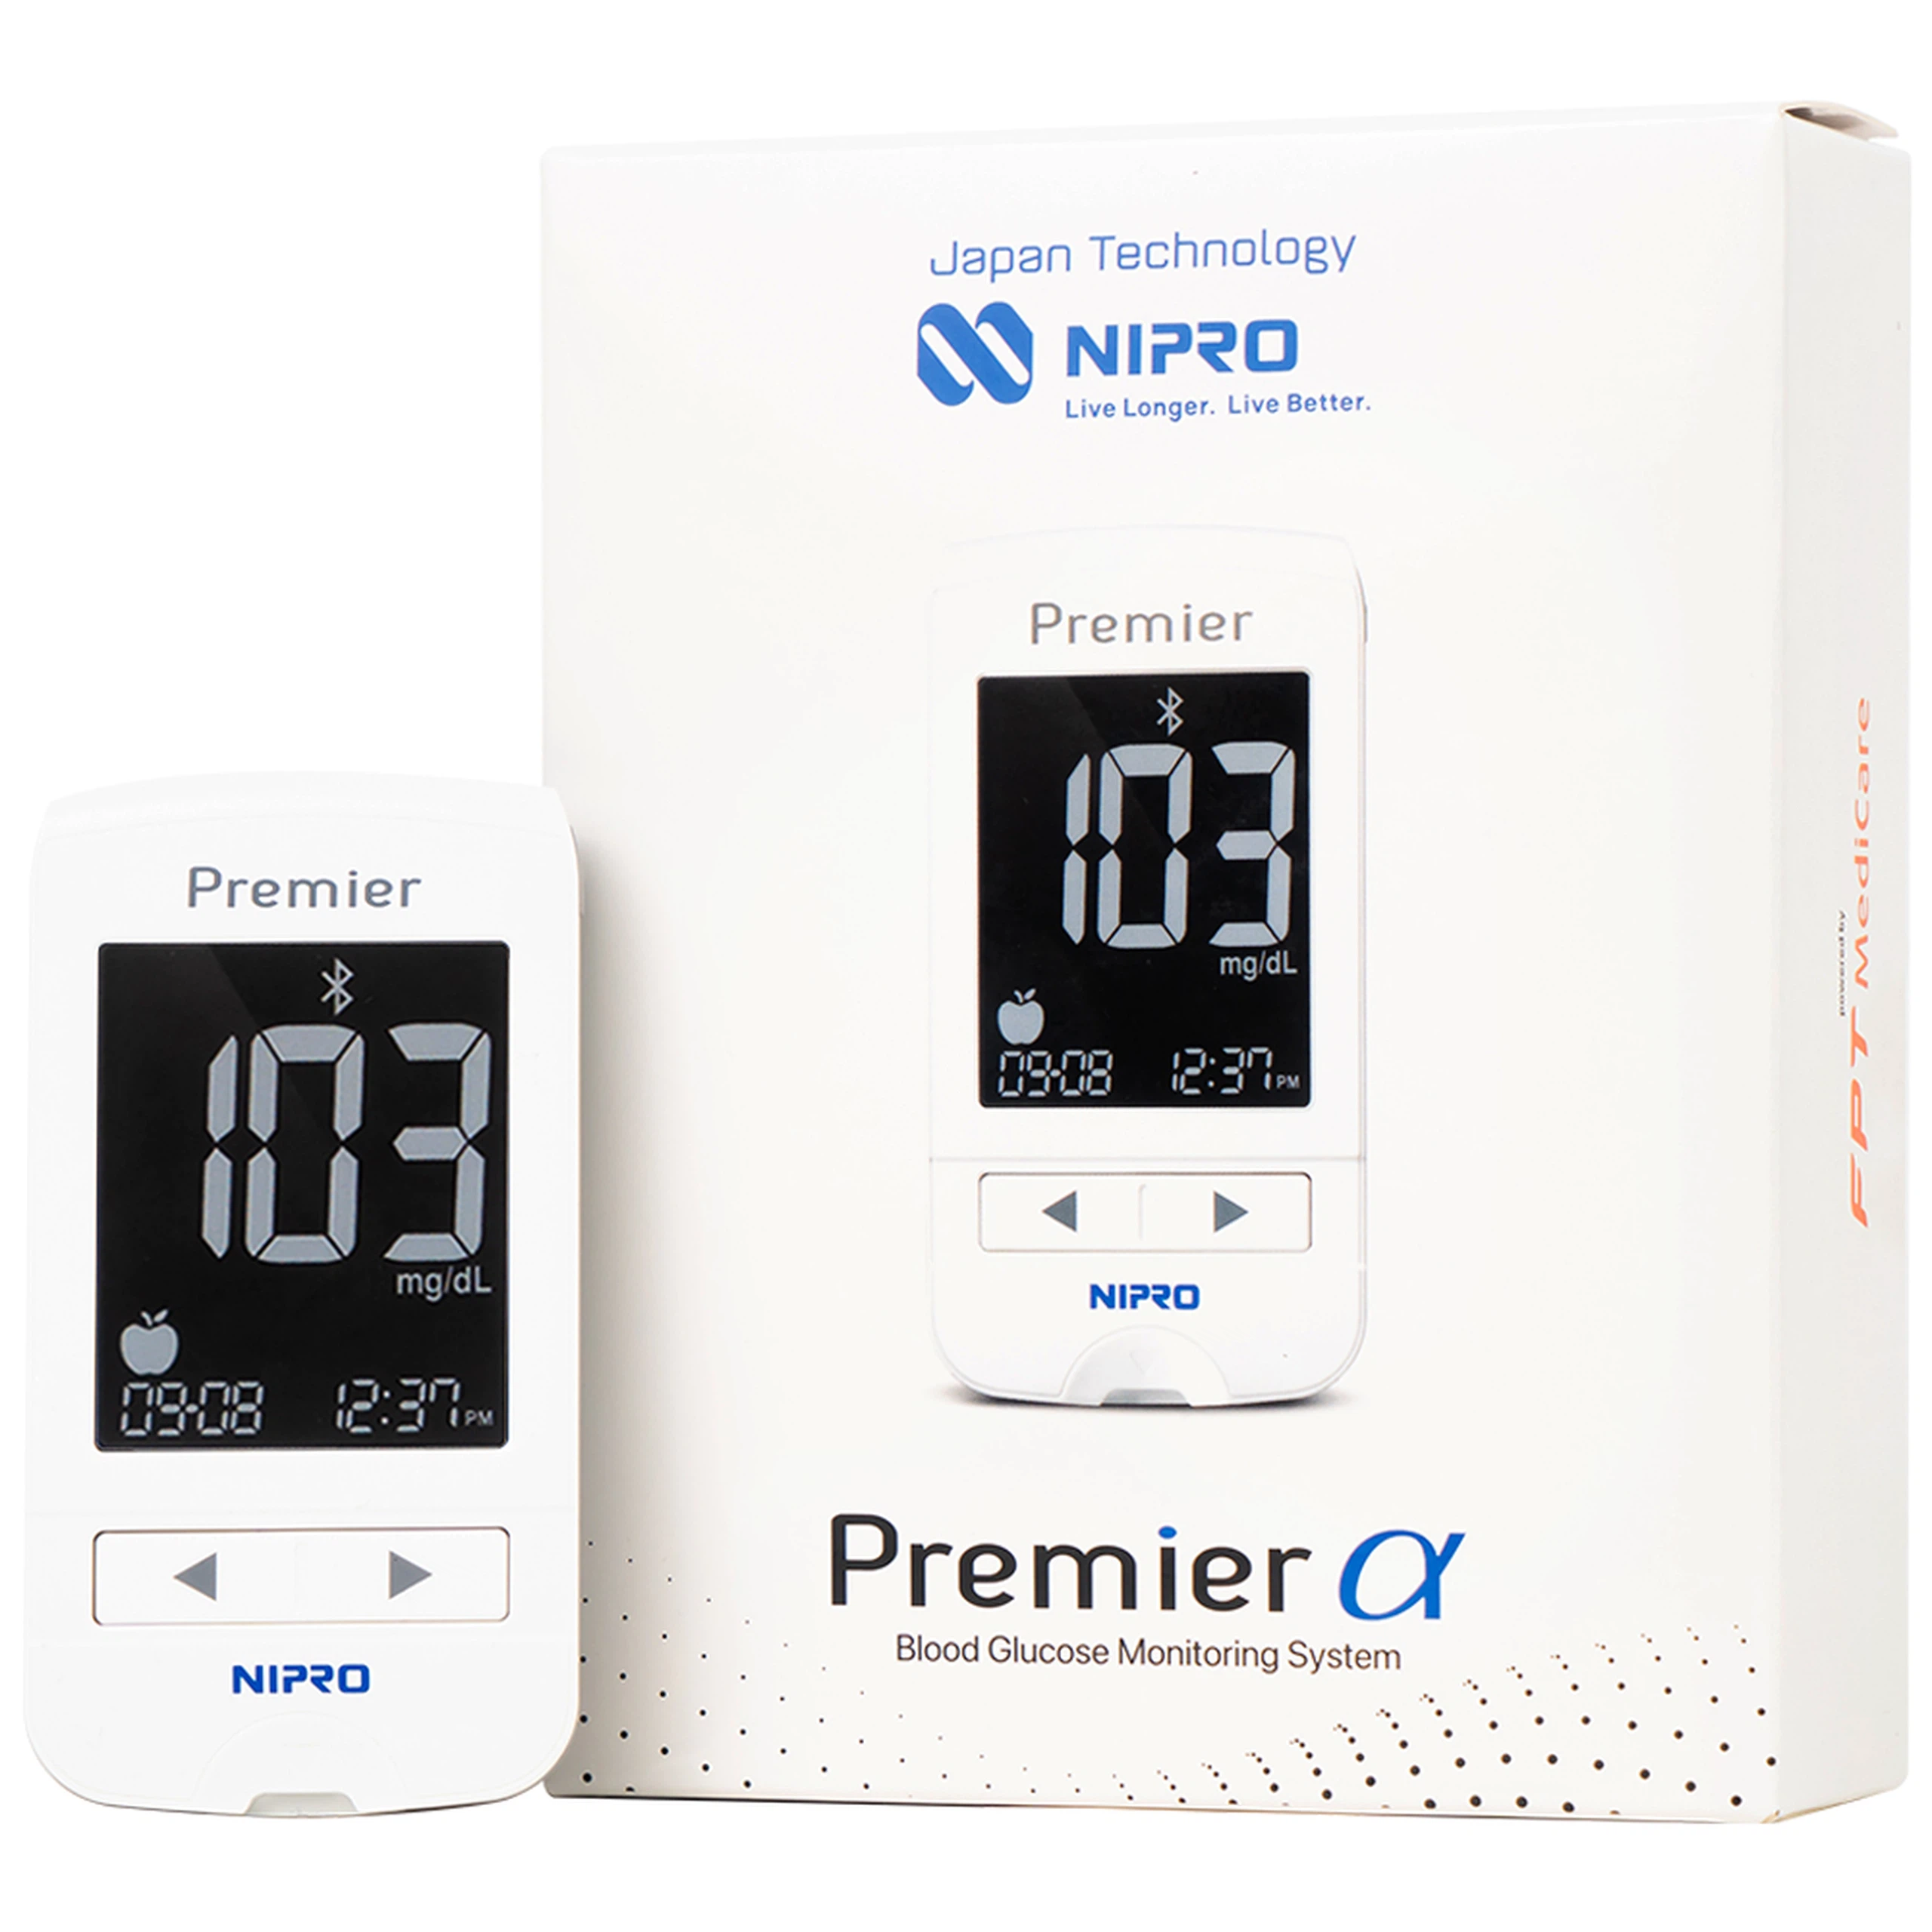 Máy đo đường huyết Nipro Premier Alpha giúp đo đường huyết một cách an toàn, nhanh chóng, chính xác